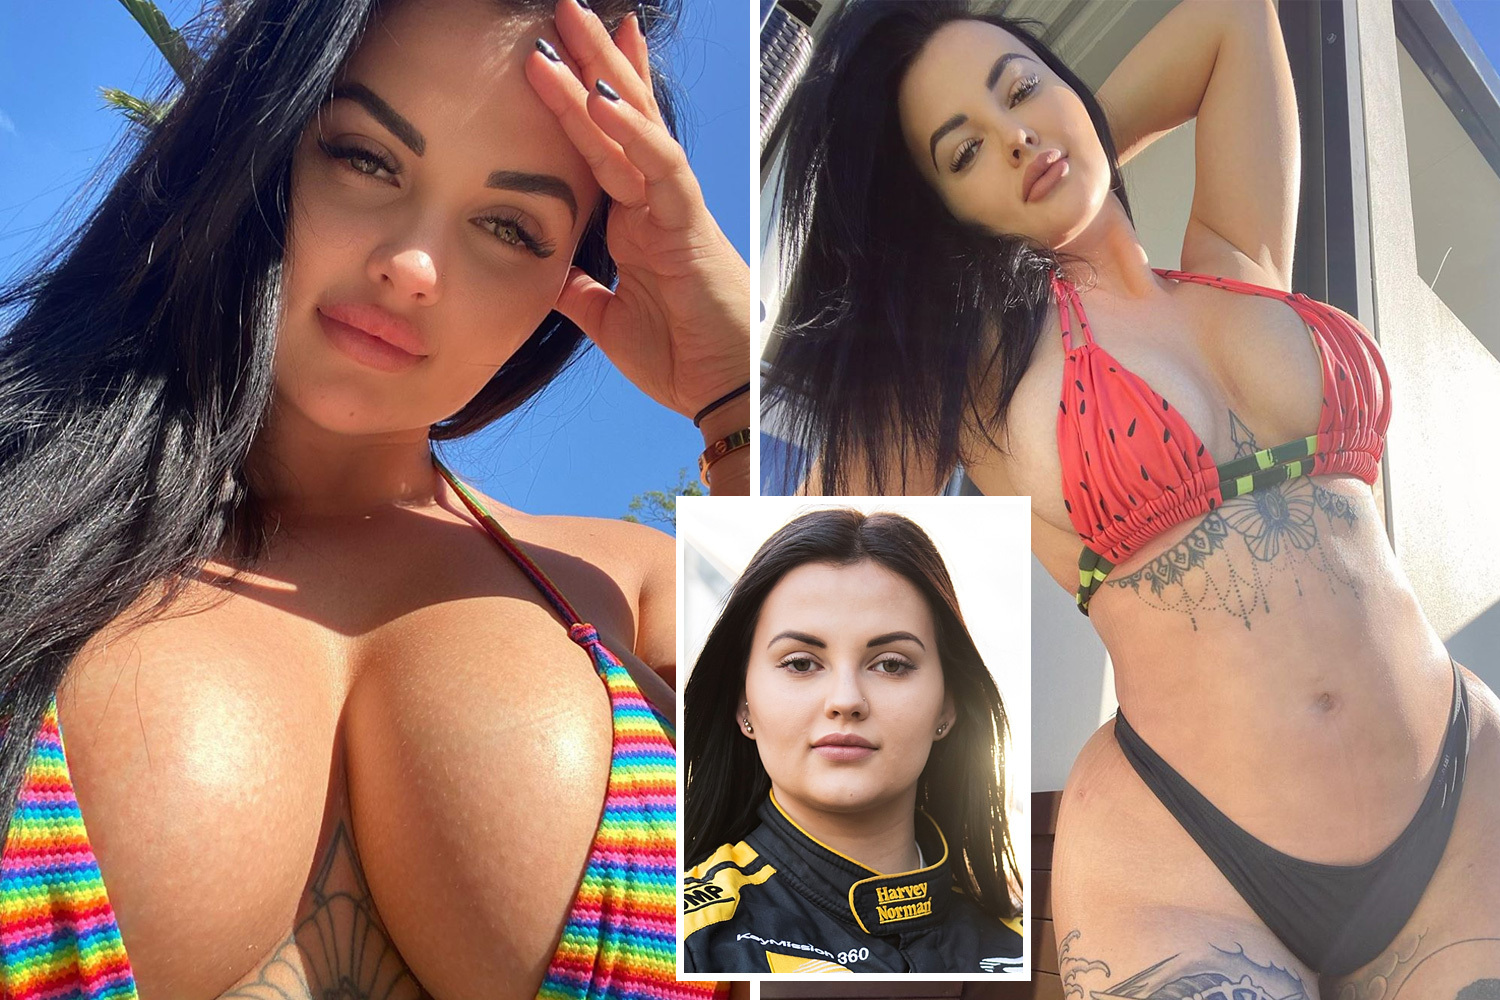 batel avraham recommends Instagram Model Turned Pornstar